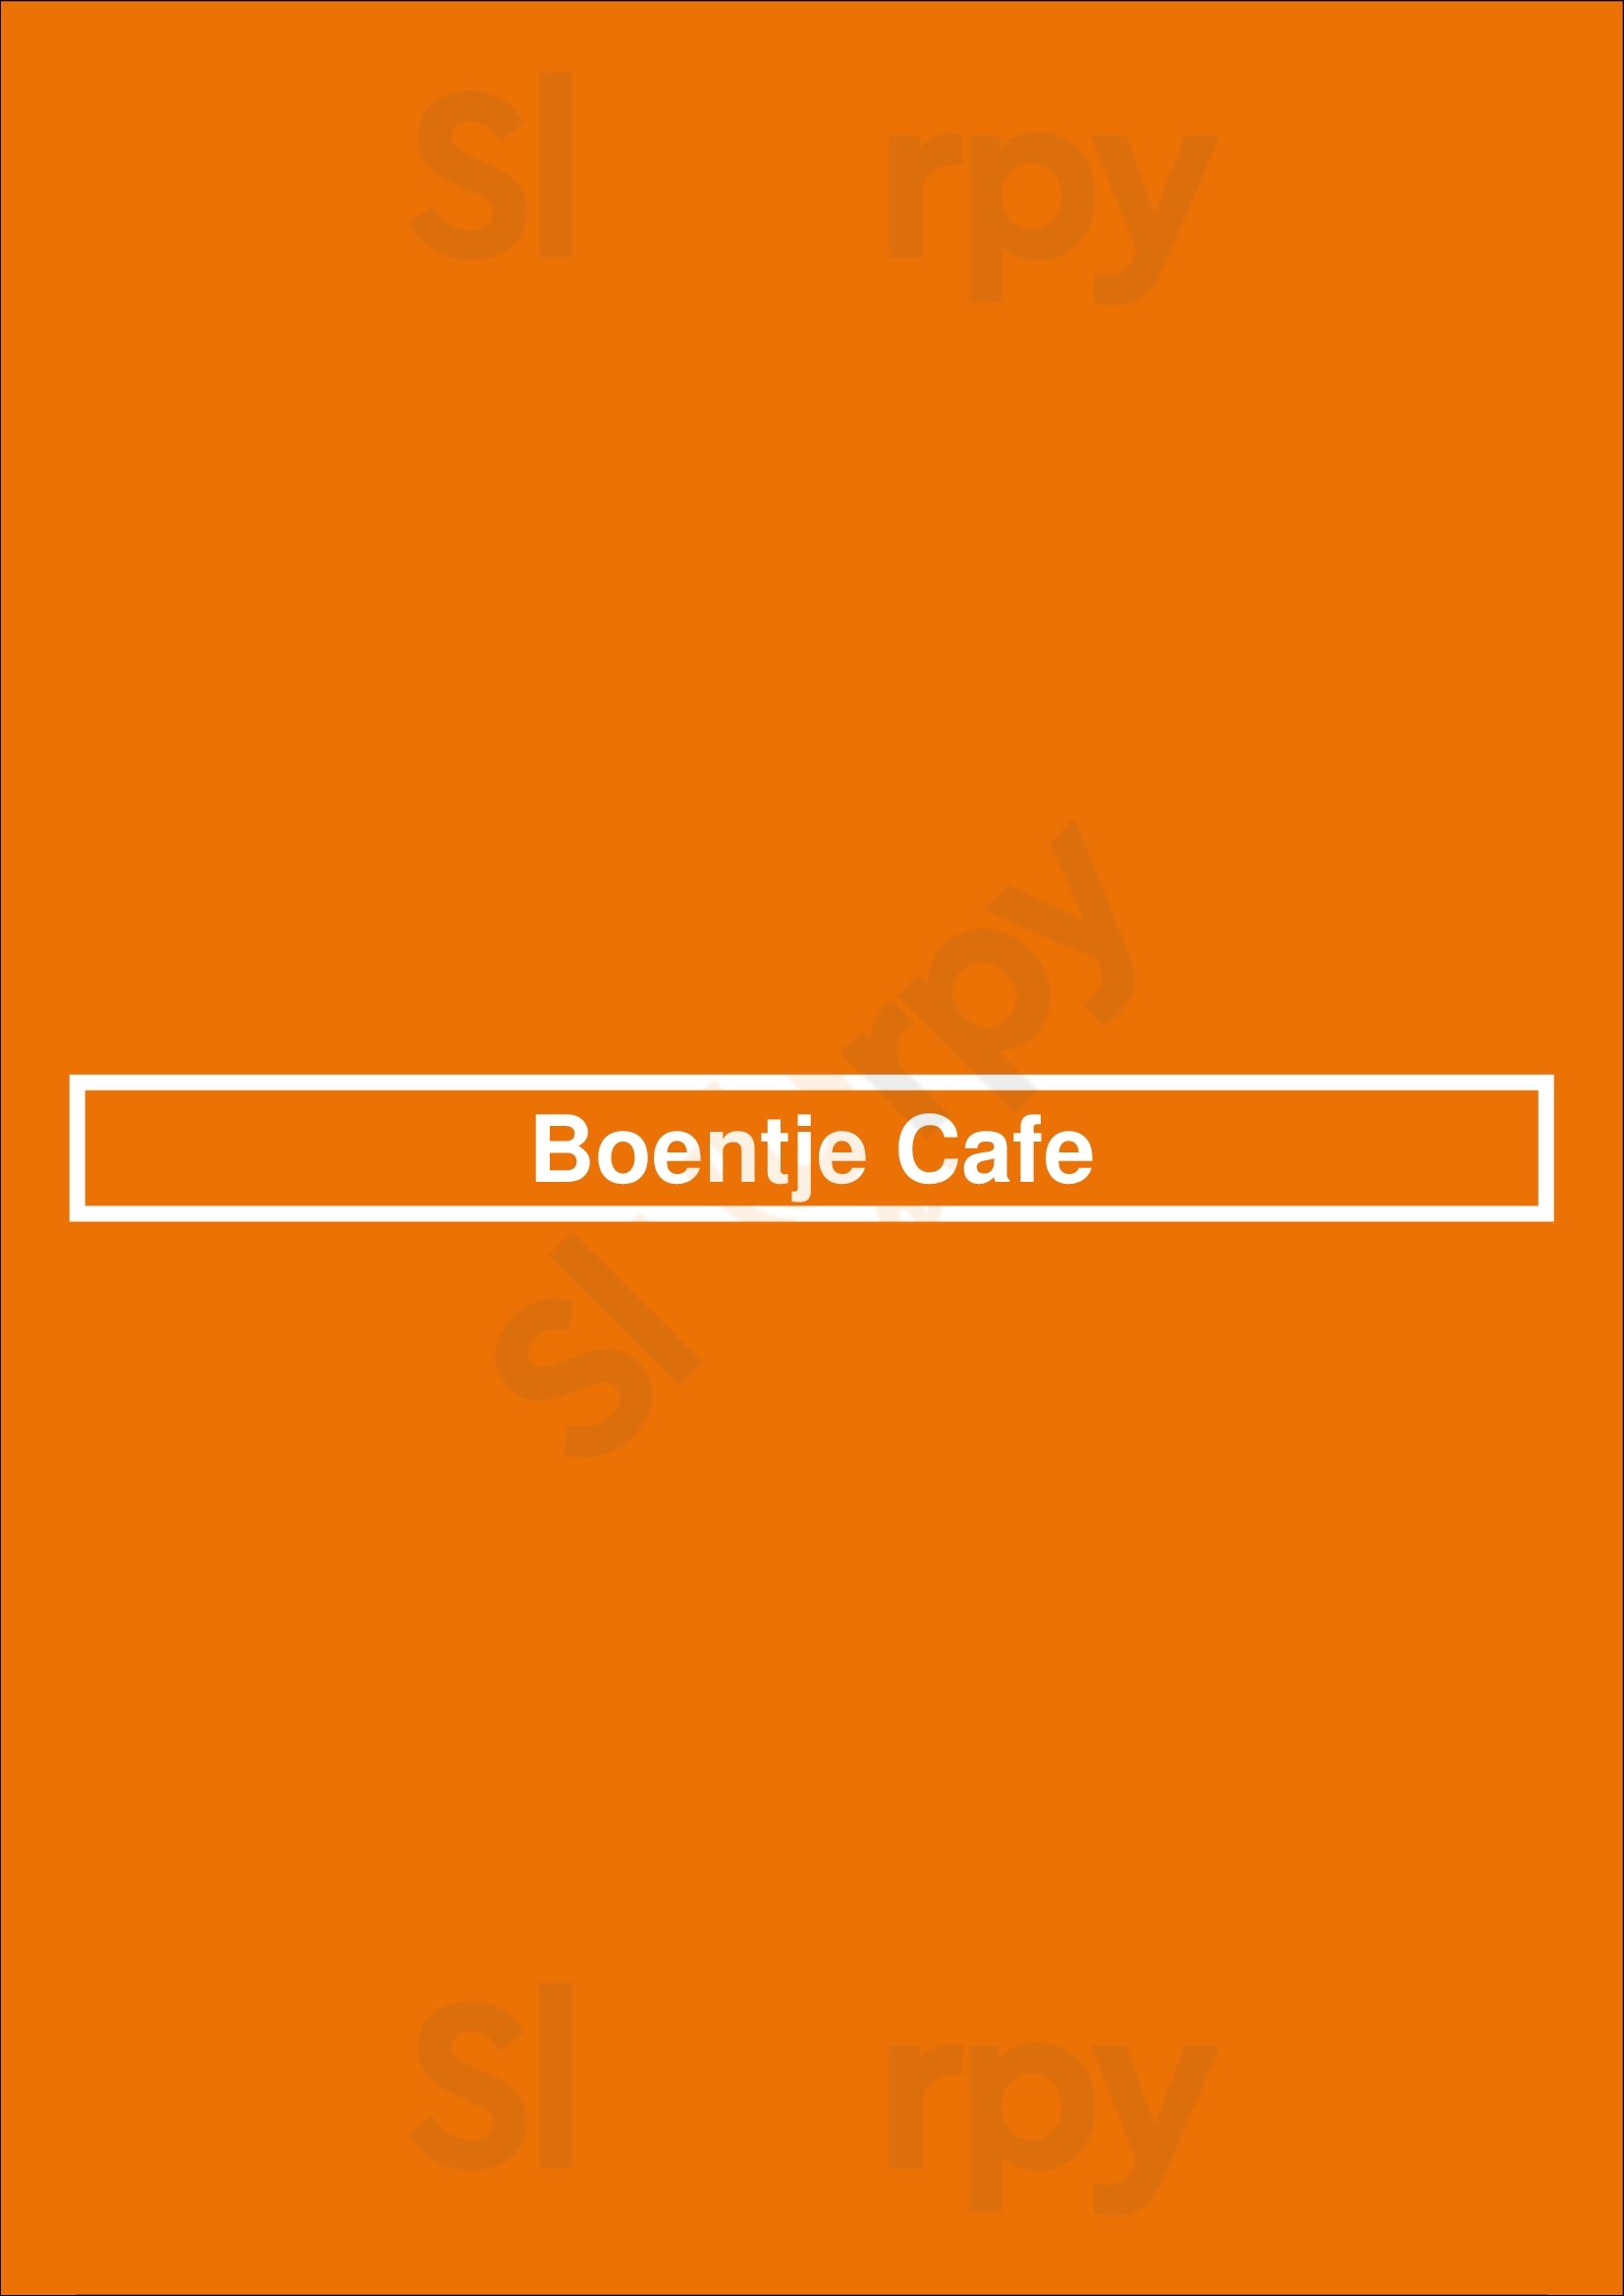 Boentje Cafe Bruxelles Menu - 1